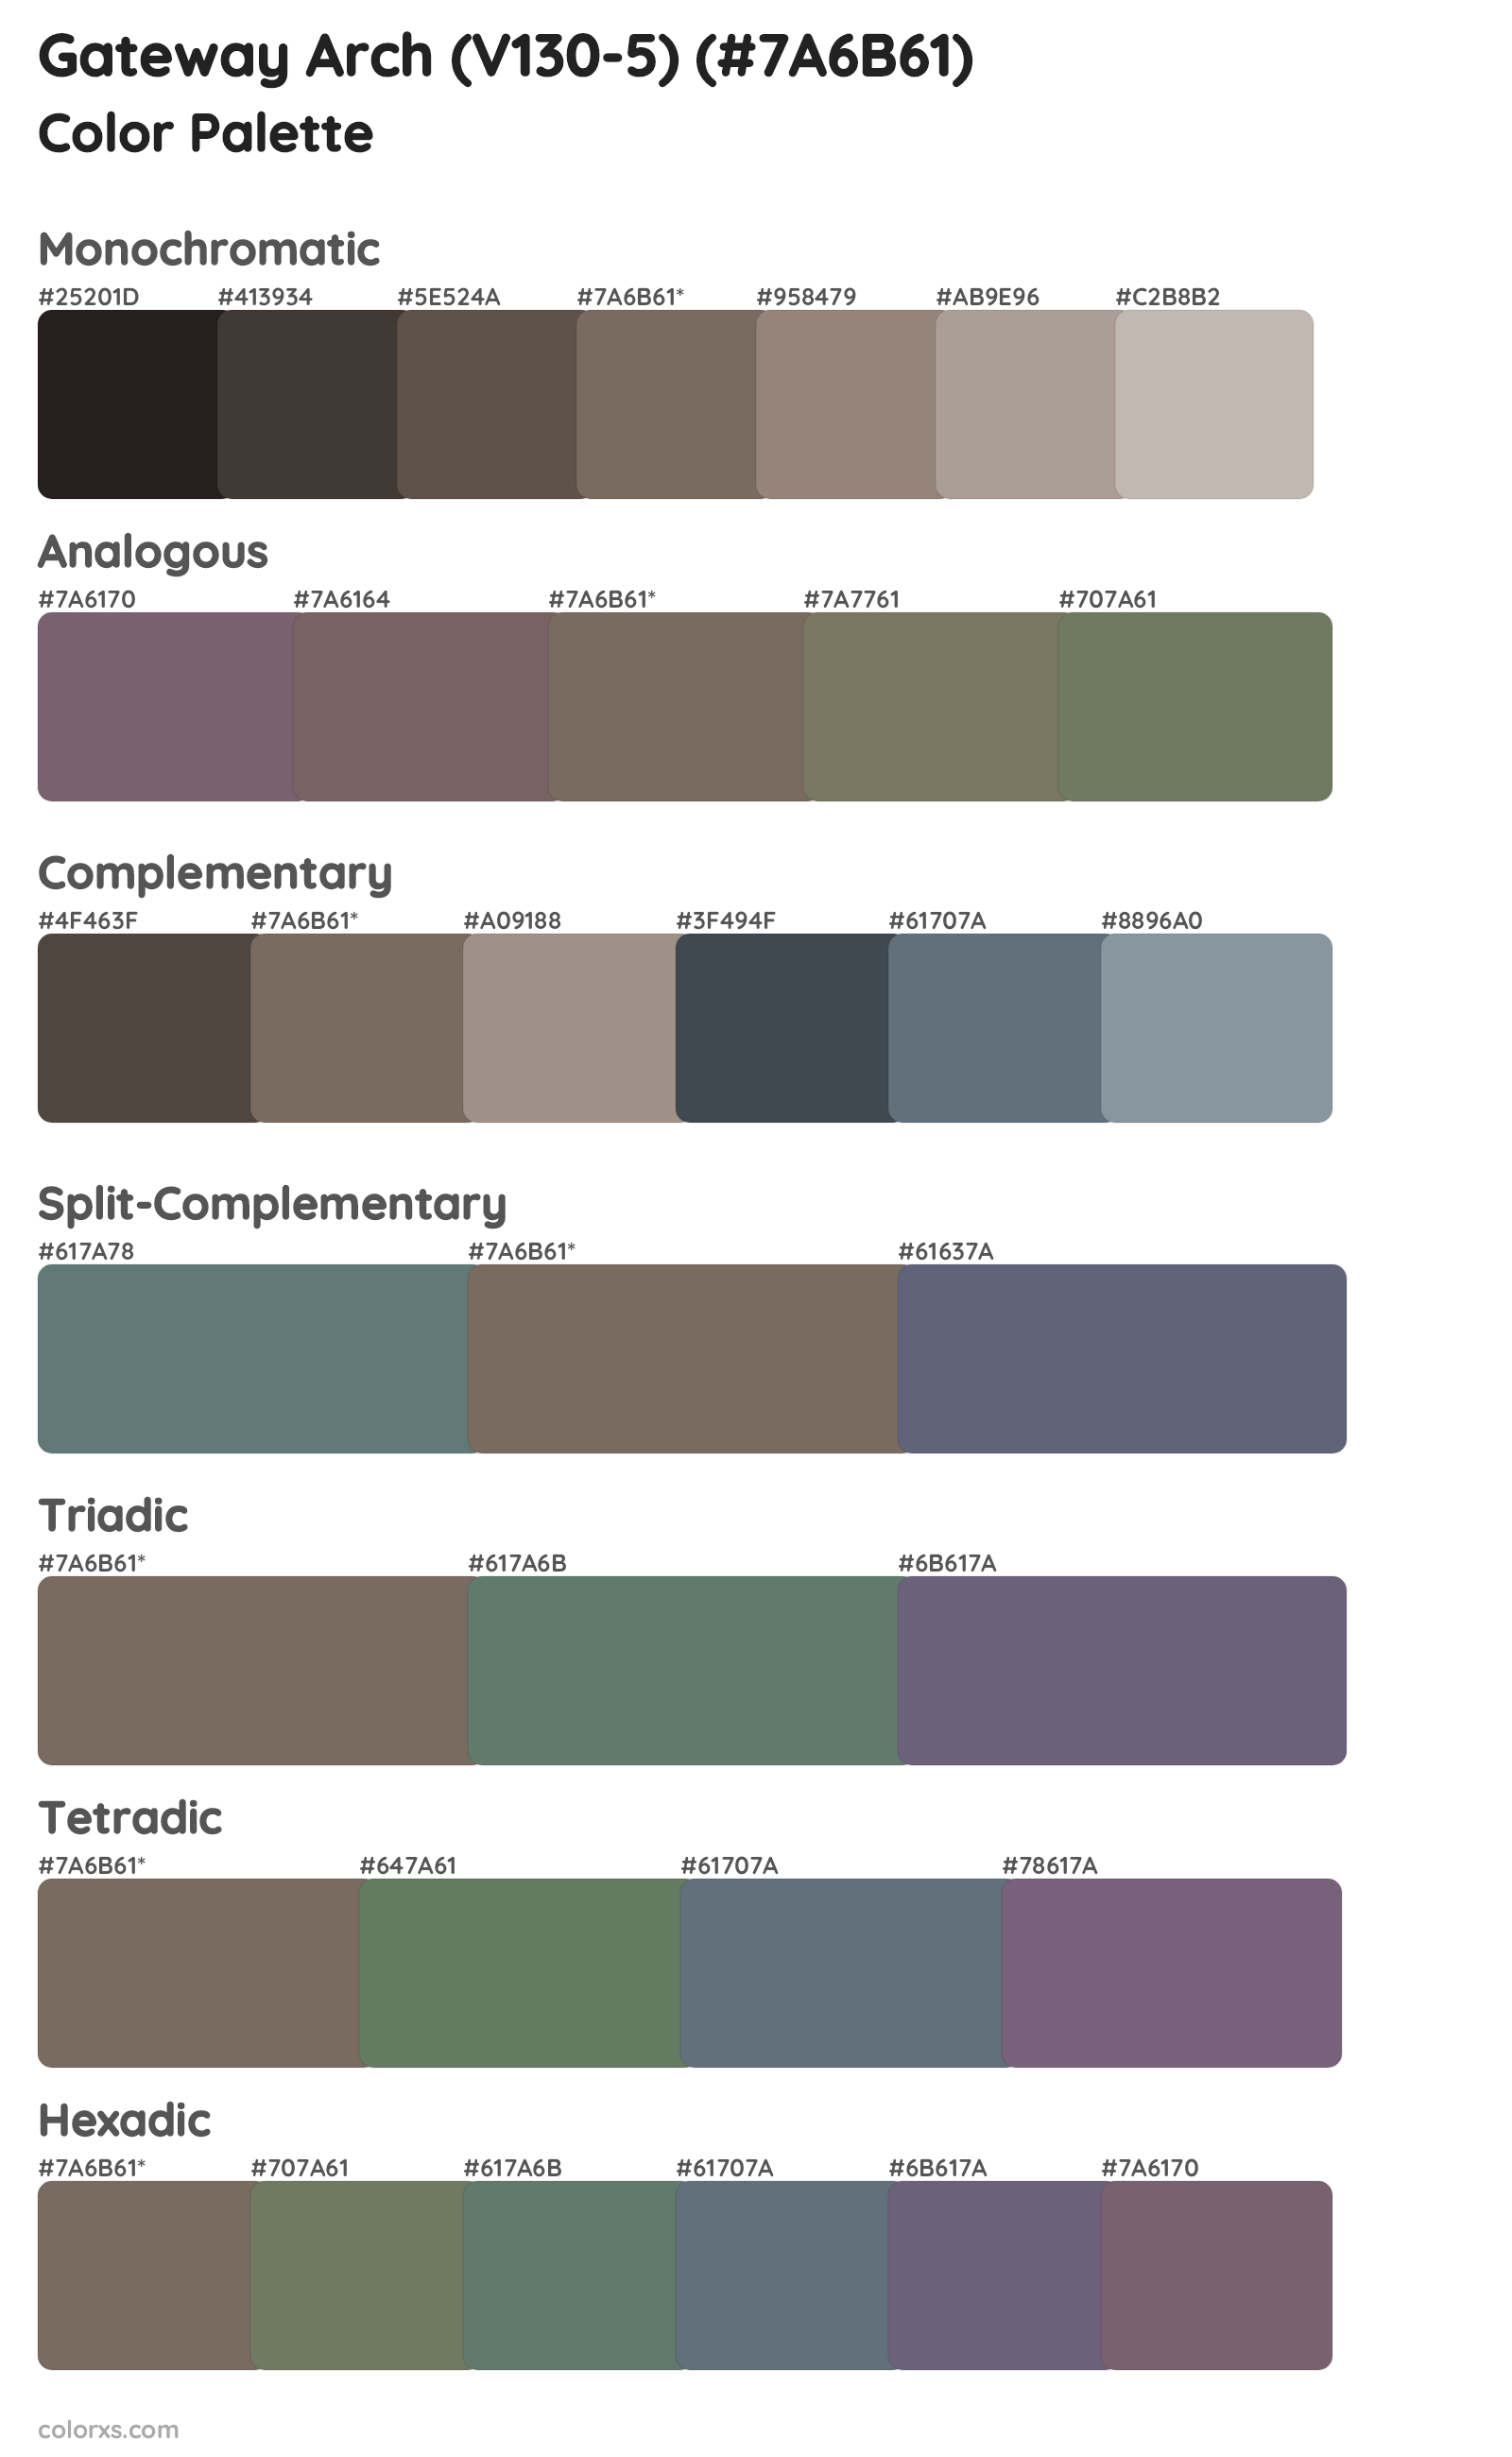 Gateway Arch (V130-5) Color Scheme Palettes